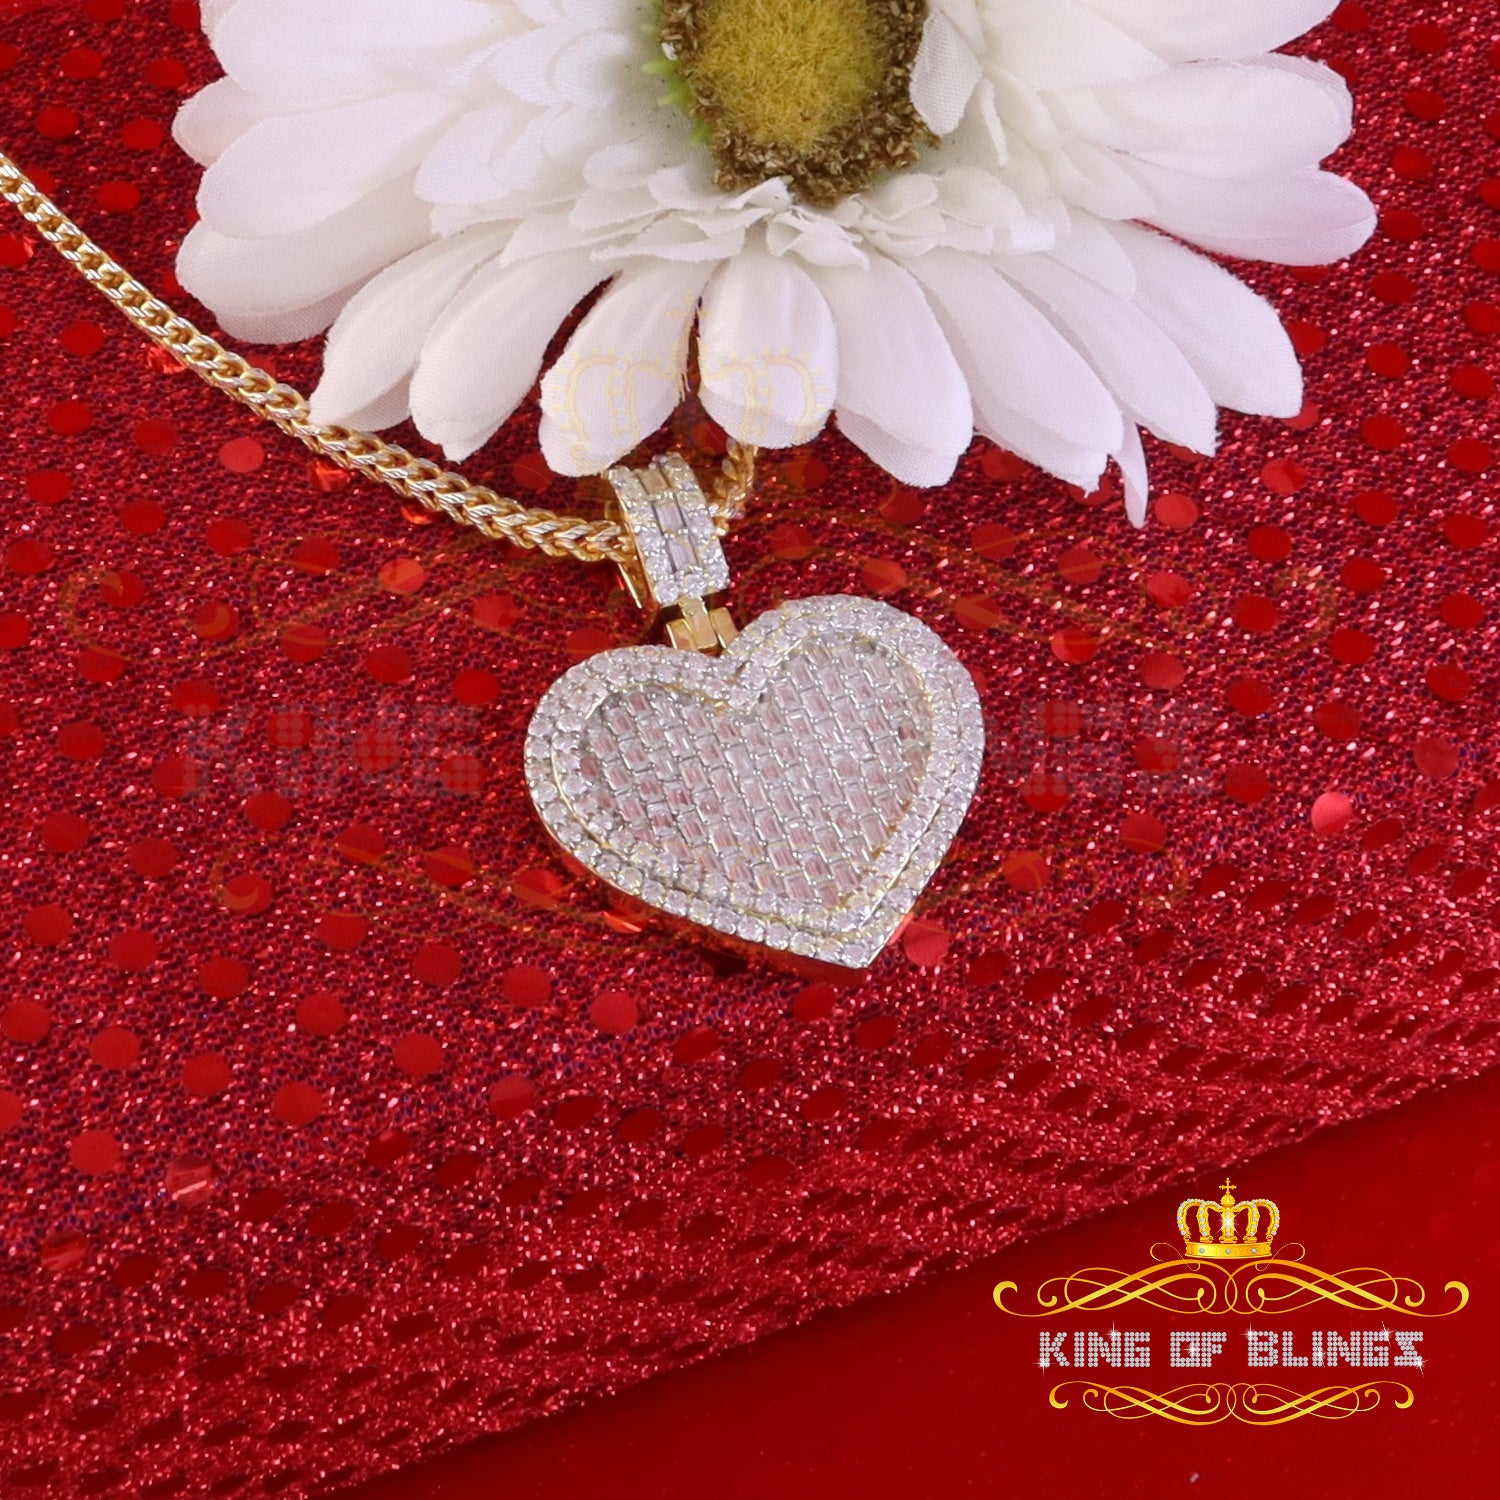 King Of Bling's 925 Silver Yellow Baguette Heart Pendant 7.50ct VVS D Clr. Moissanite for He/She KING OF BLINGS